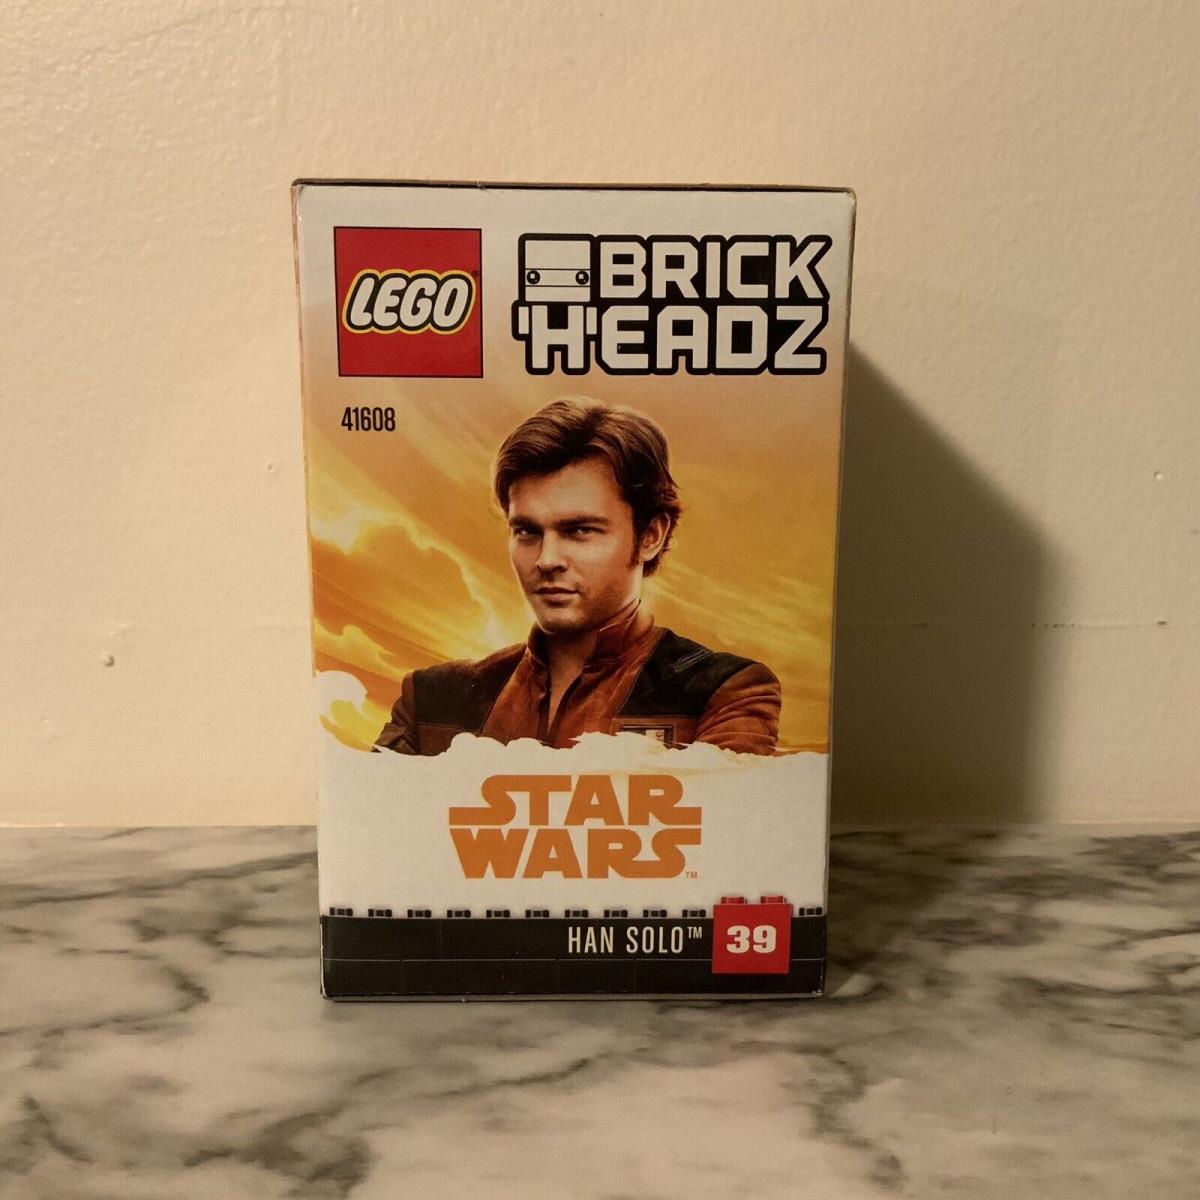 Lego 41608 Brickheadz Han Solo Authentic/new/retired